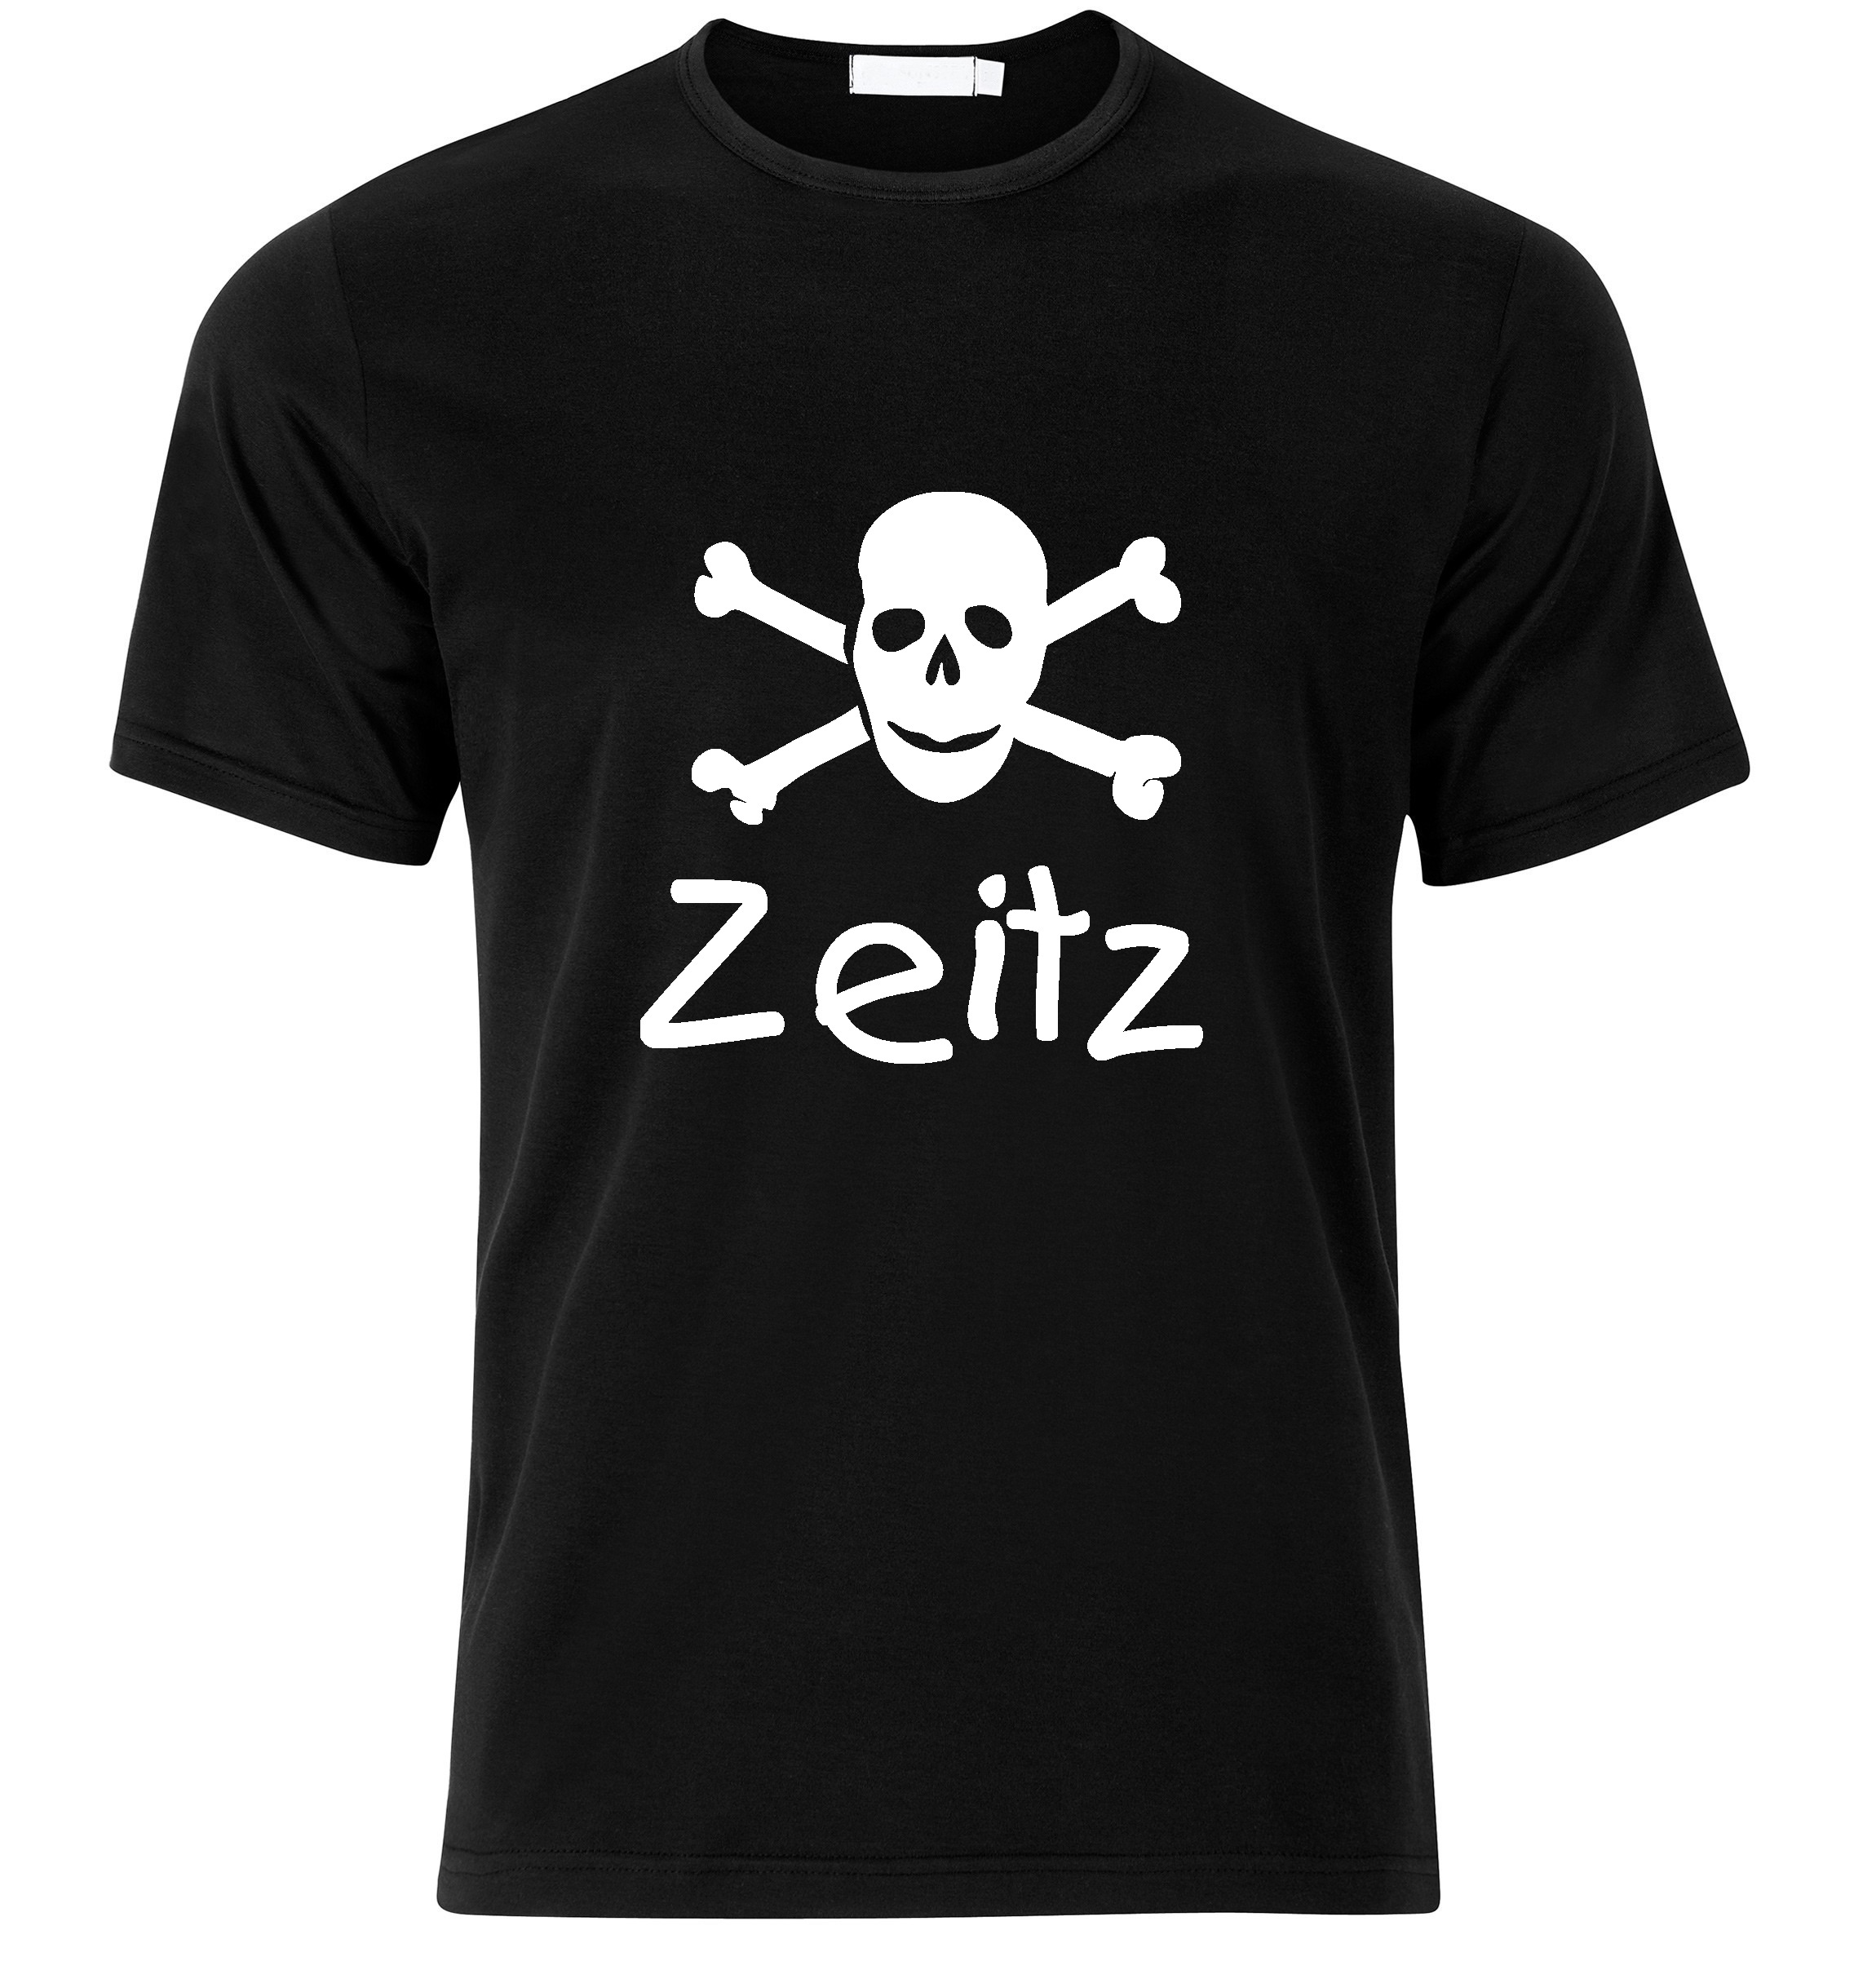 T-Shirt Zeitz Jolly Roger, Totenkopf